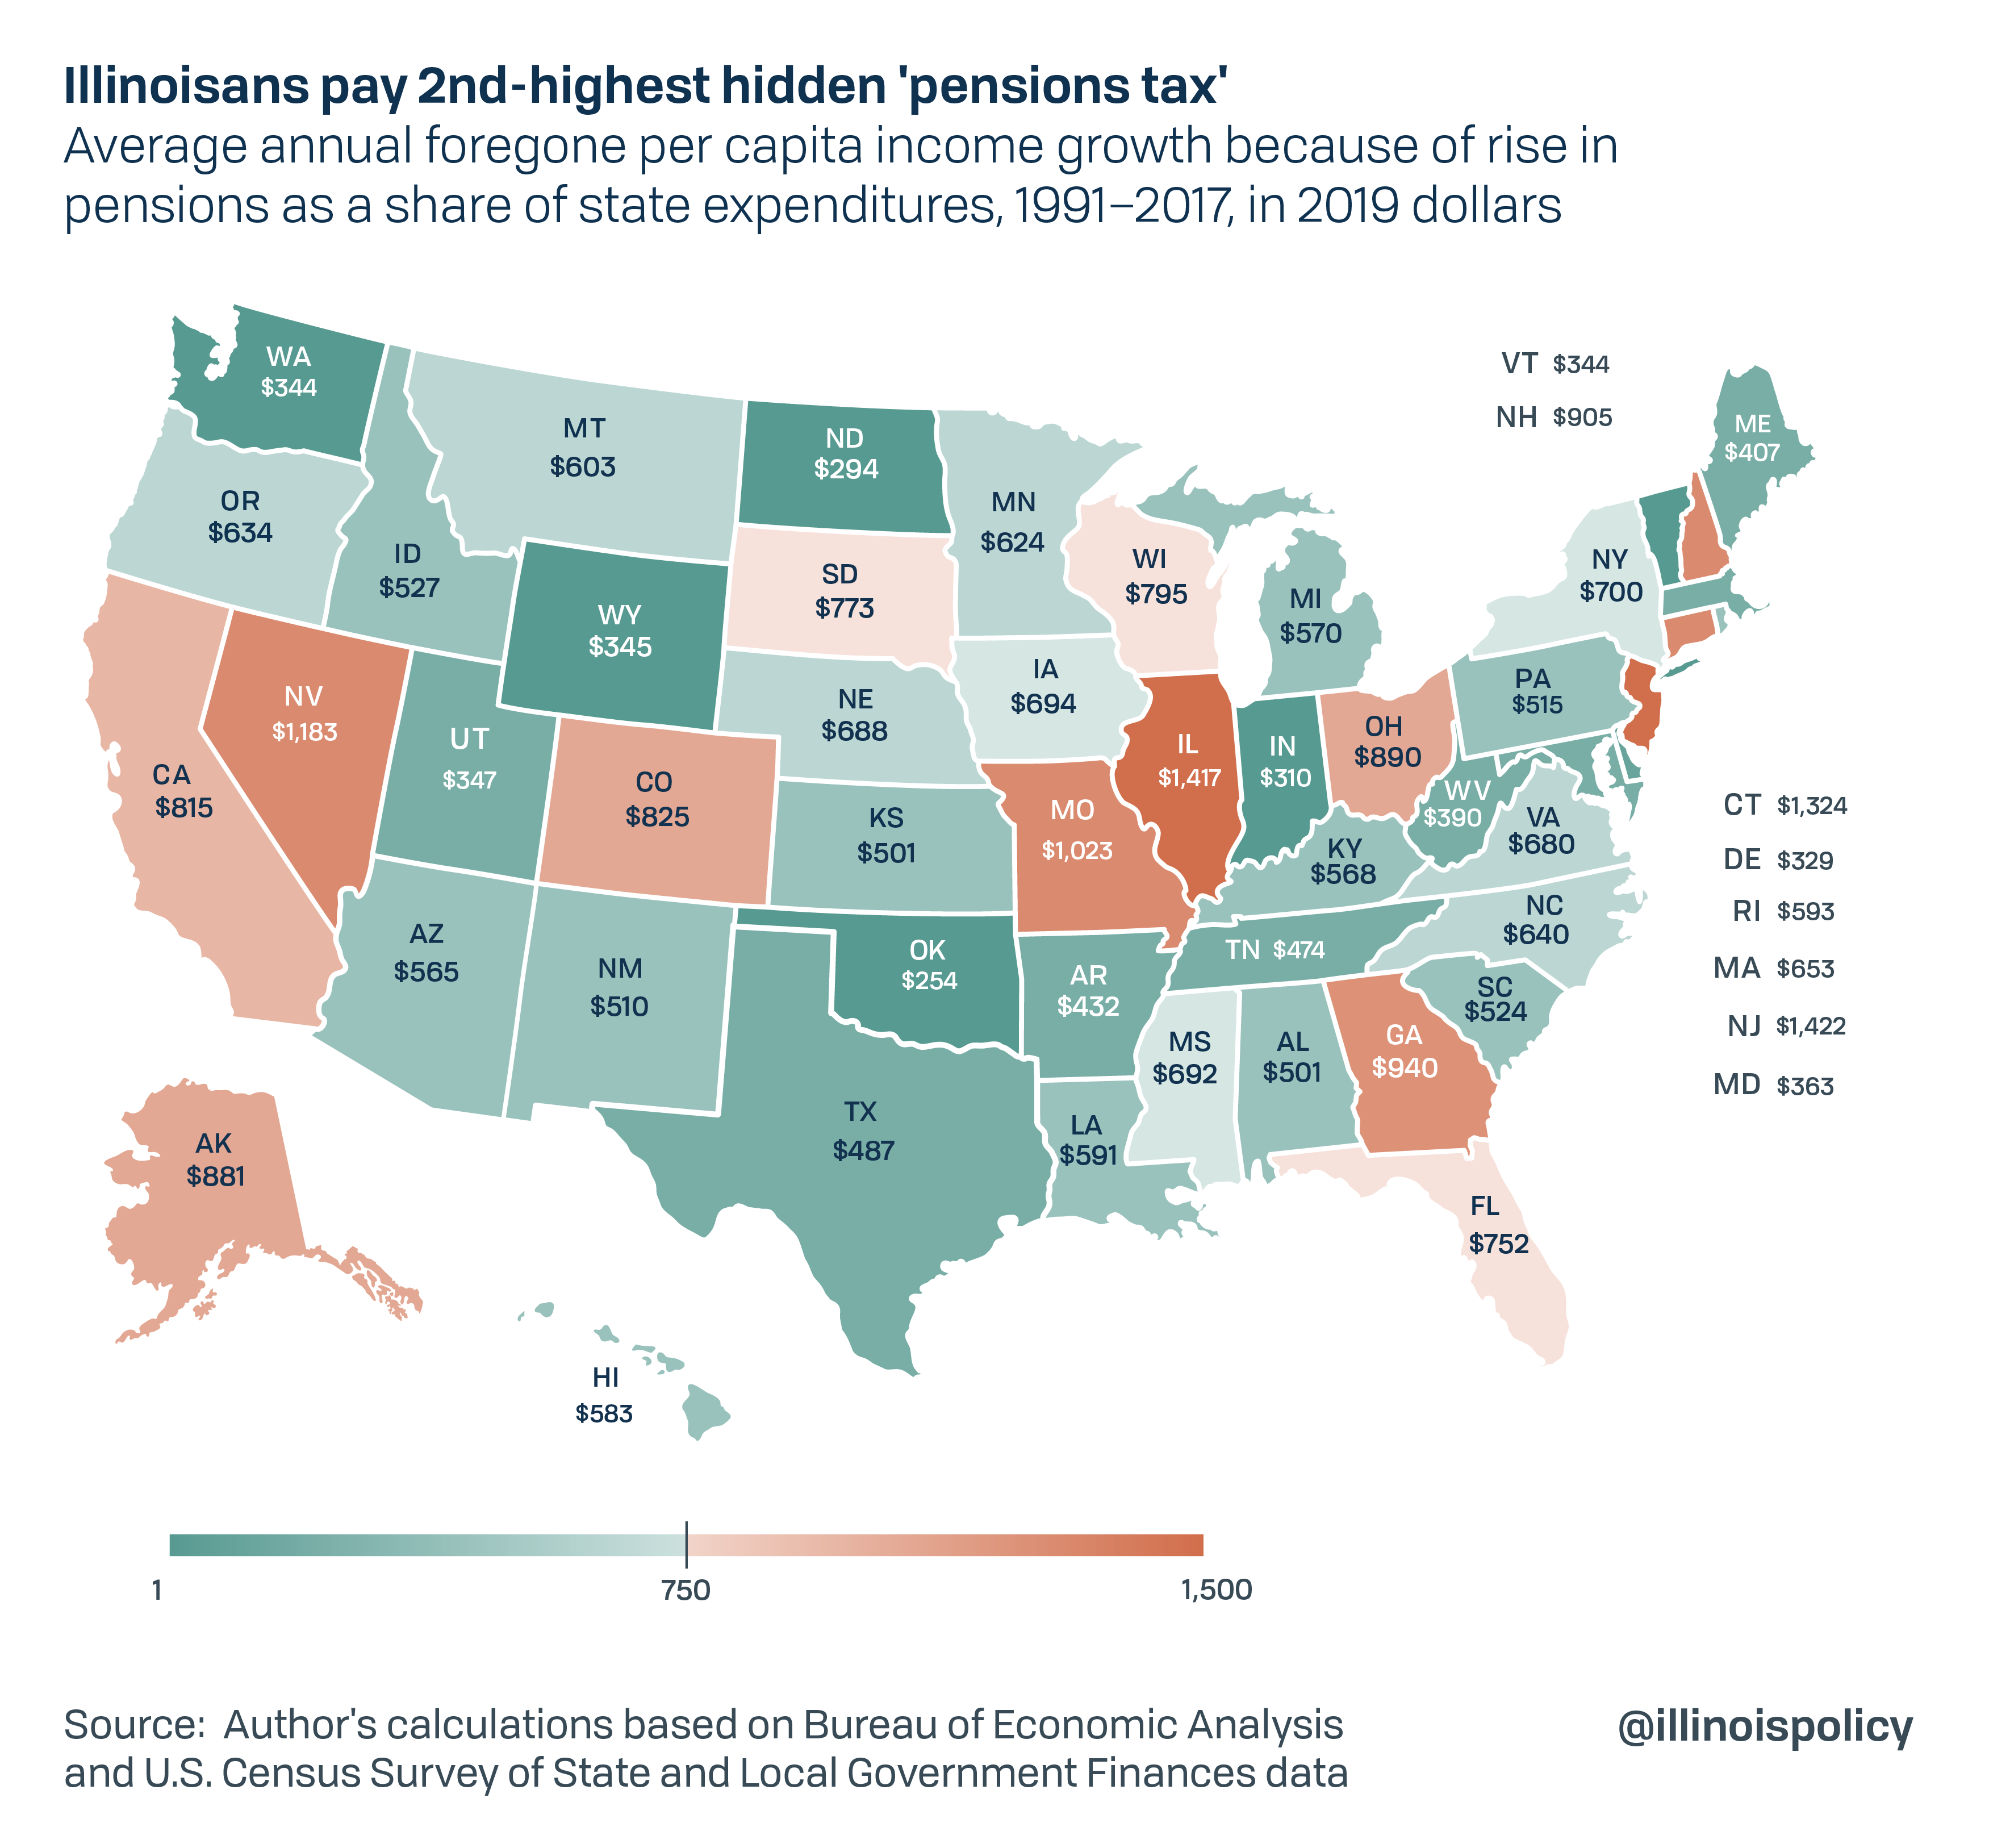 Illinoisans pay 2nd-highest hidden 'pension tax'